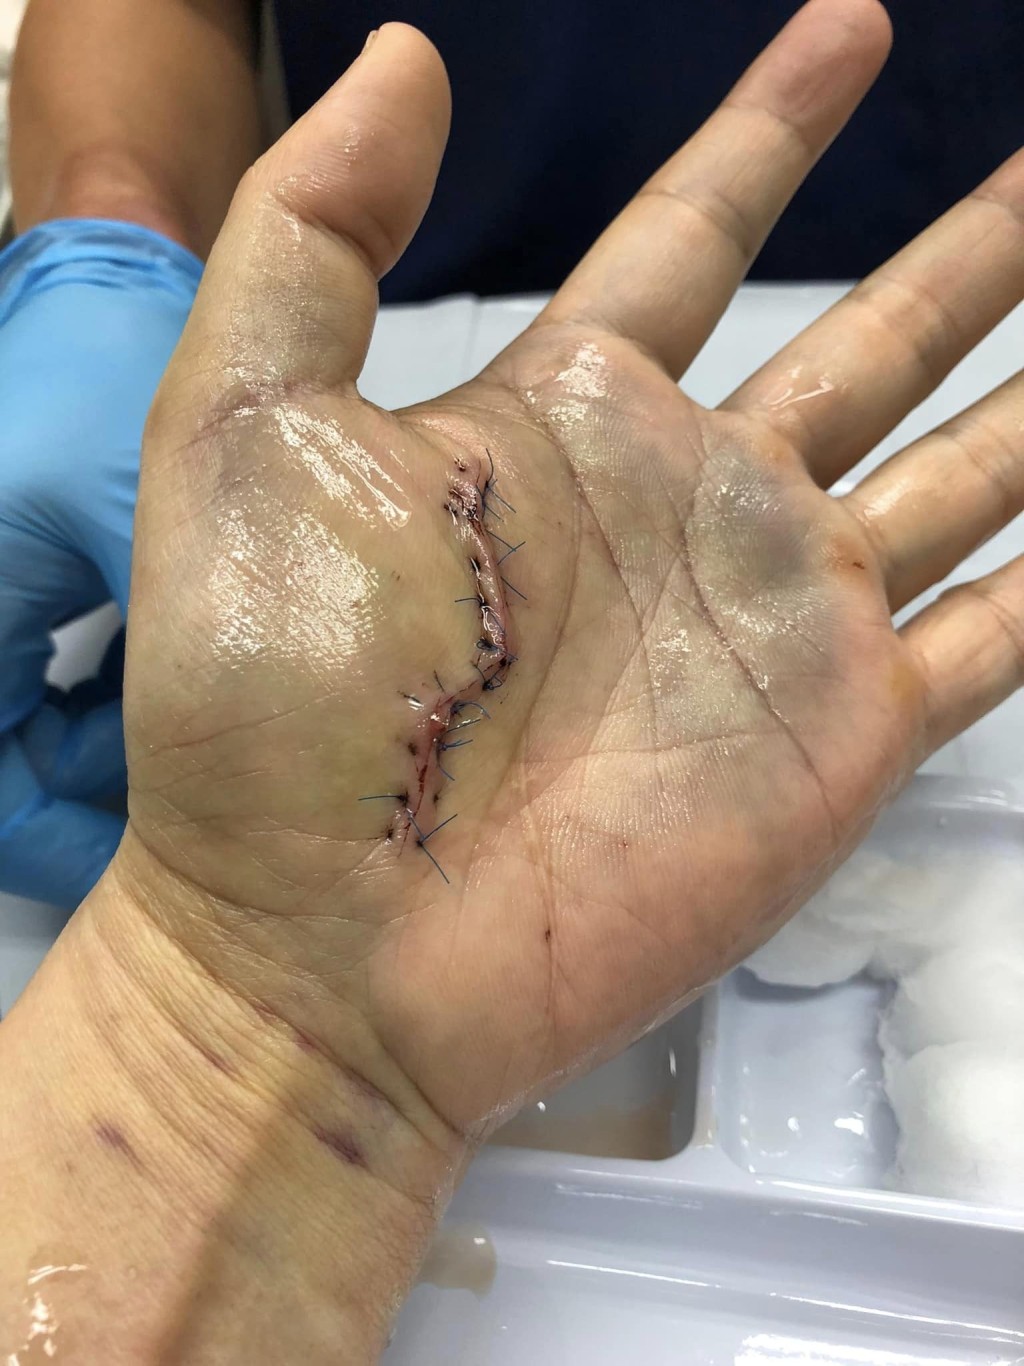 港男的手掌在事發後亦留下一道長傷口。「香港街市魚類海鮮研究社」FB